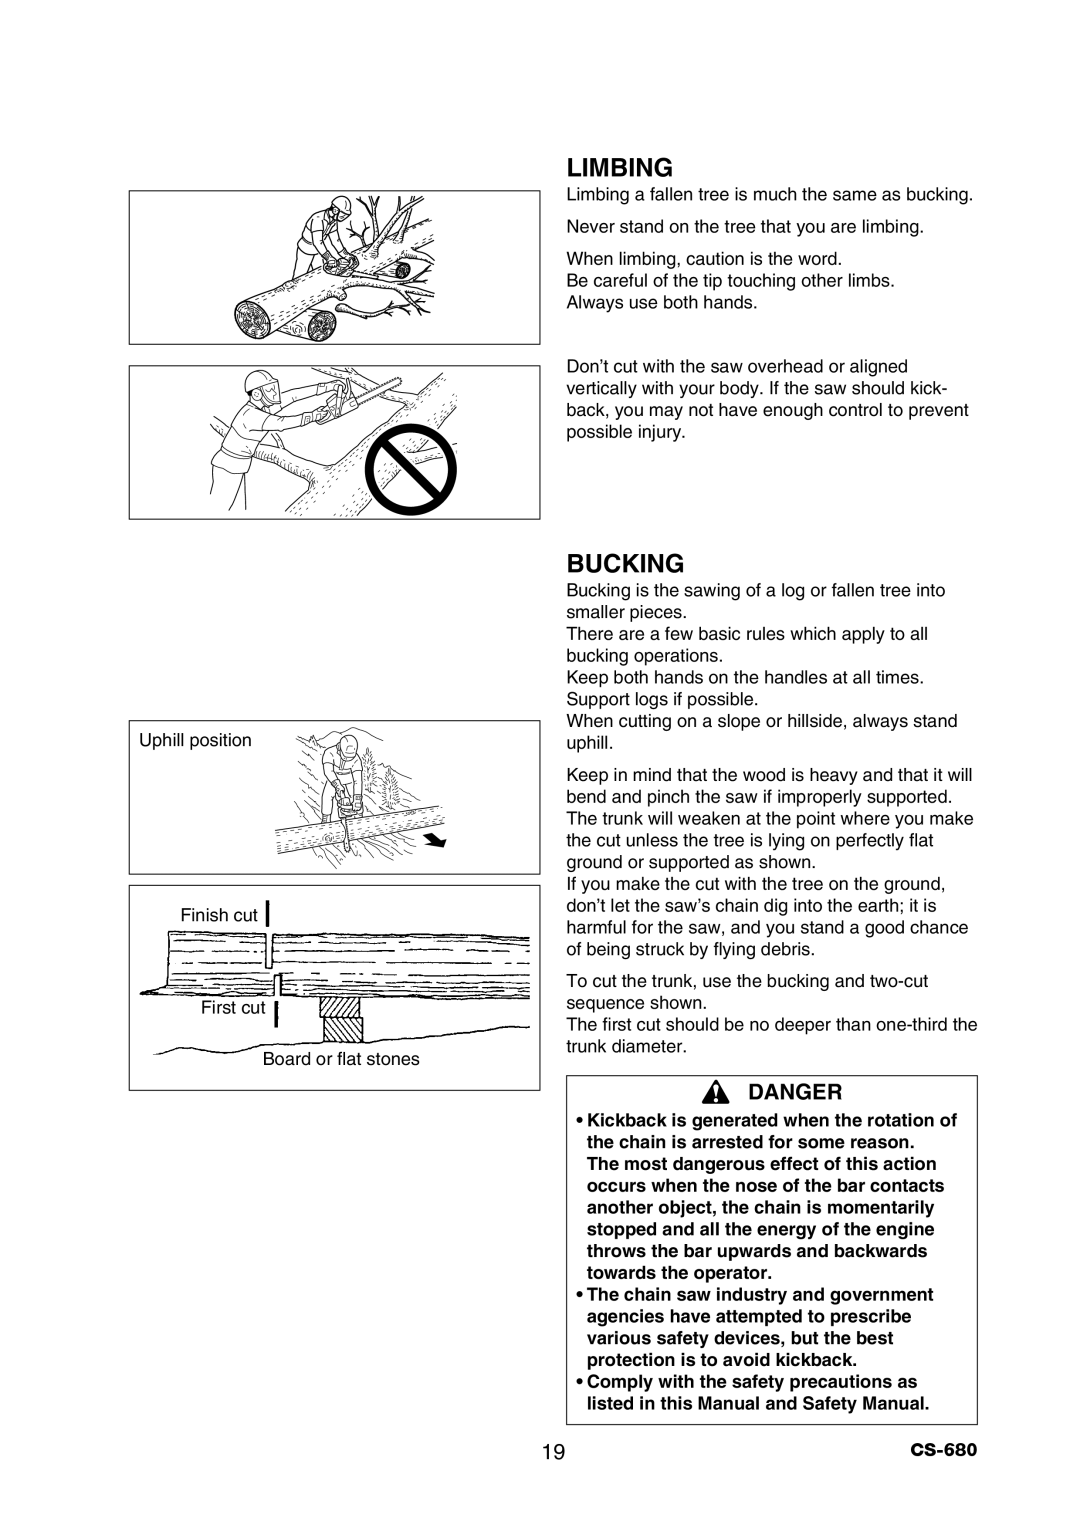 Echo CS-680 instruction manual Limbing, Bucking, Danger 